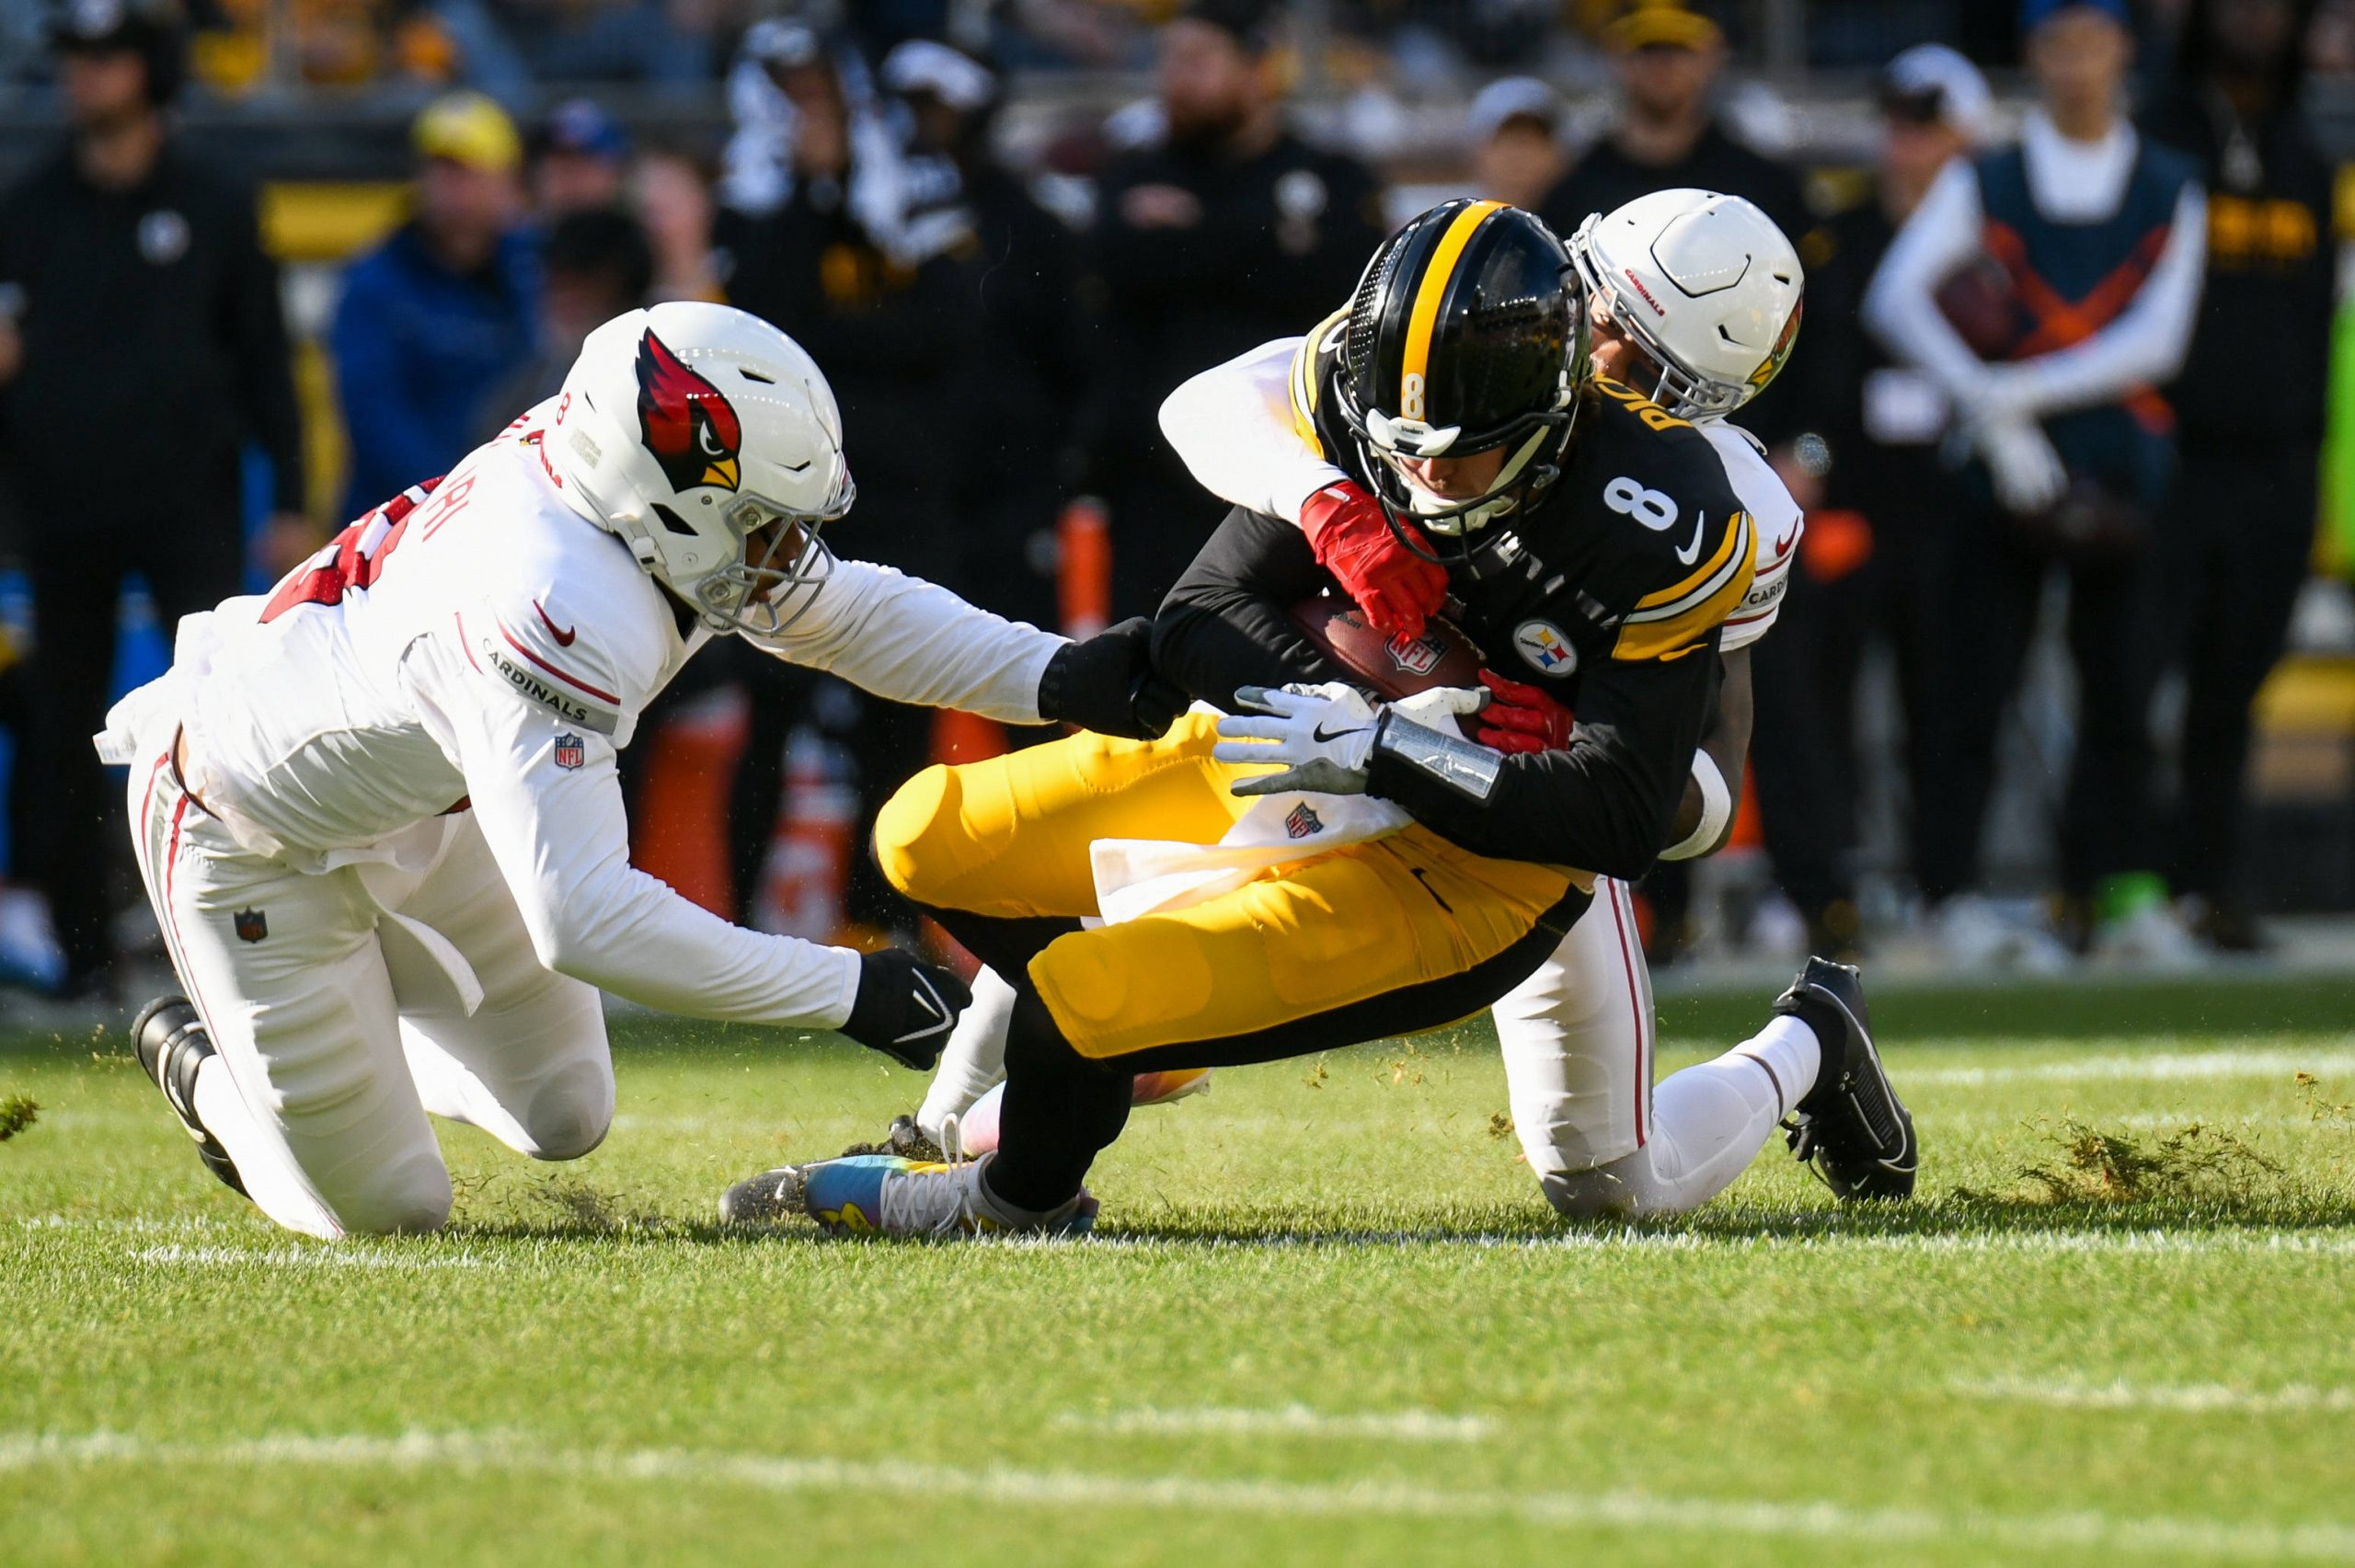 FootballR - NFL - Die Pittsburgh Steelers treten in einem intensiven Footballspiel gegen die Arizona Cardinals an. Steelers QB Kenny Pickett führt das Team an, aber er muss möglicherweise operiert werden und könnte es auch sein